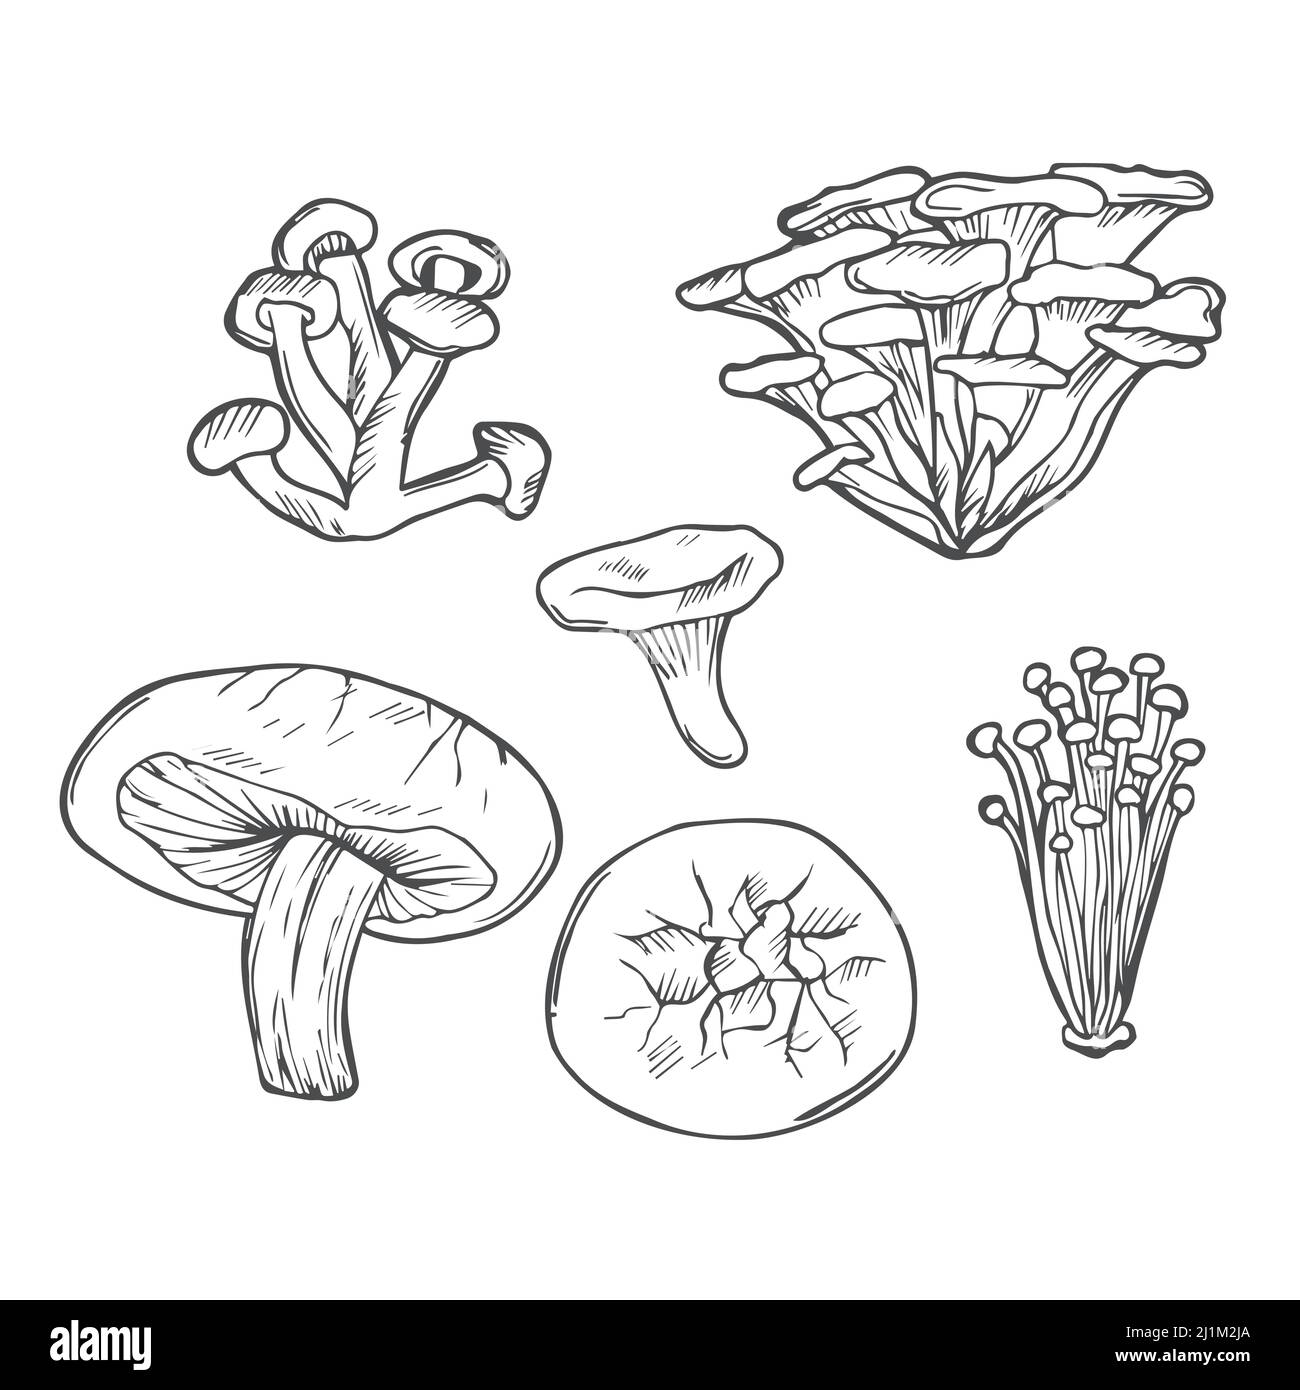 Doodle funghi vettore disegnato a mano setl. Shiitake di funghi commestibili, chanterelle, enokitake, miele agarico, cibo biologico fresco isolato su bianco. Illustrazione Vettoriale